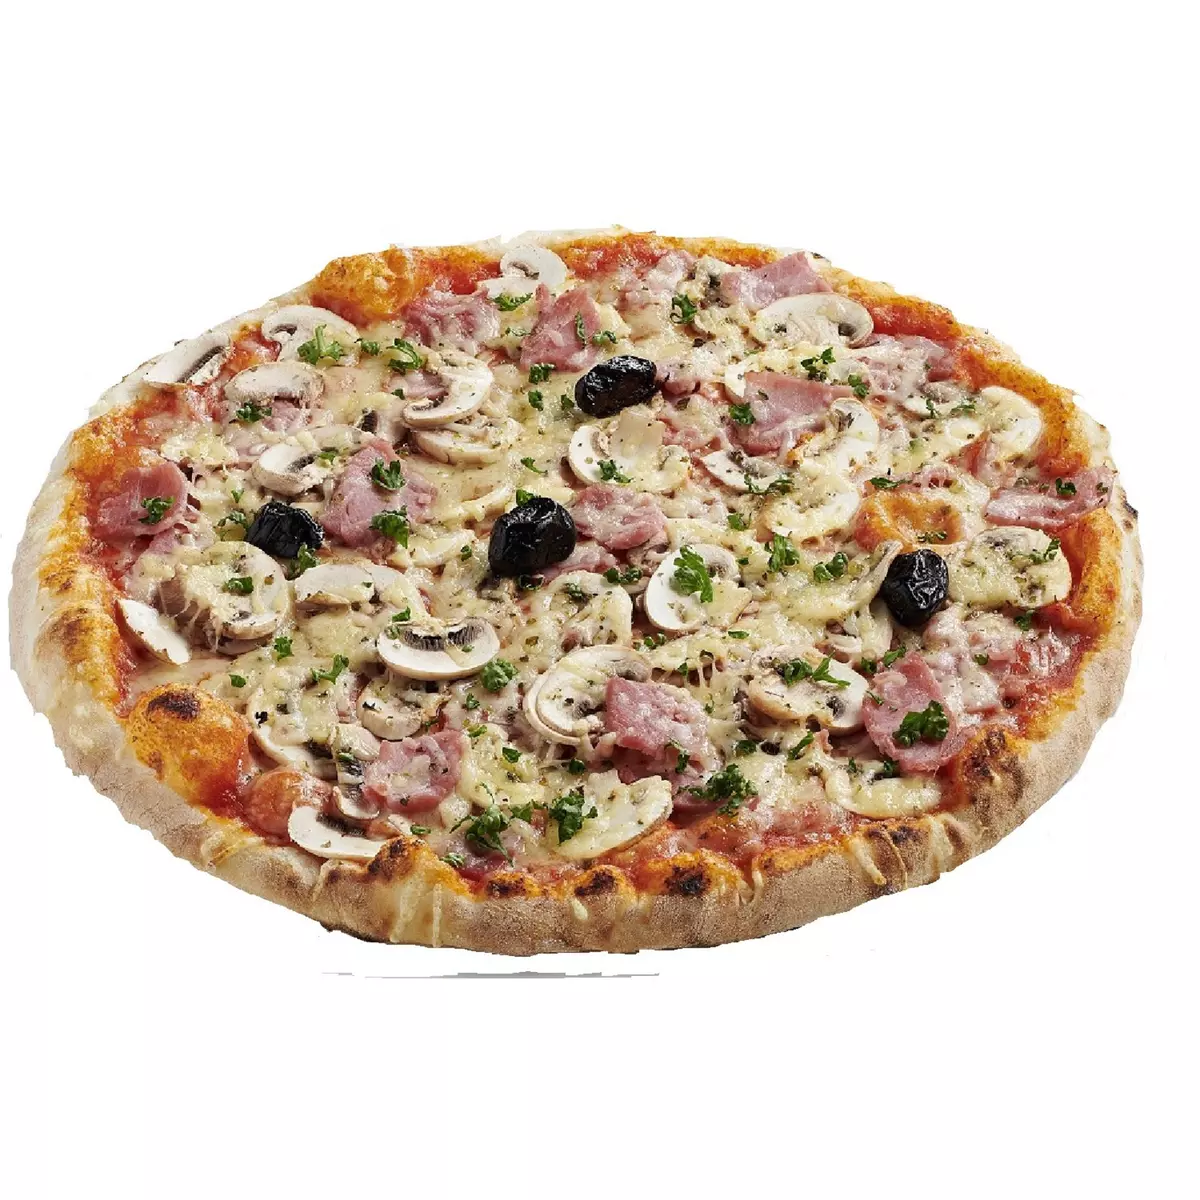 AUCHAN LE TRAITEUR Pizza jambon fromage 30 pièces 450g pas cher 